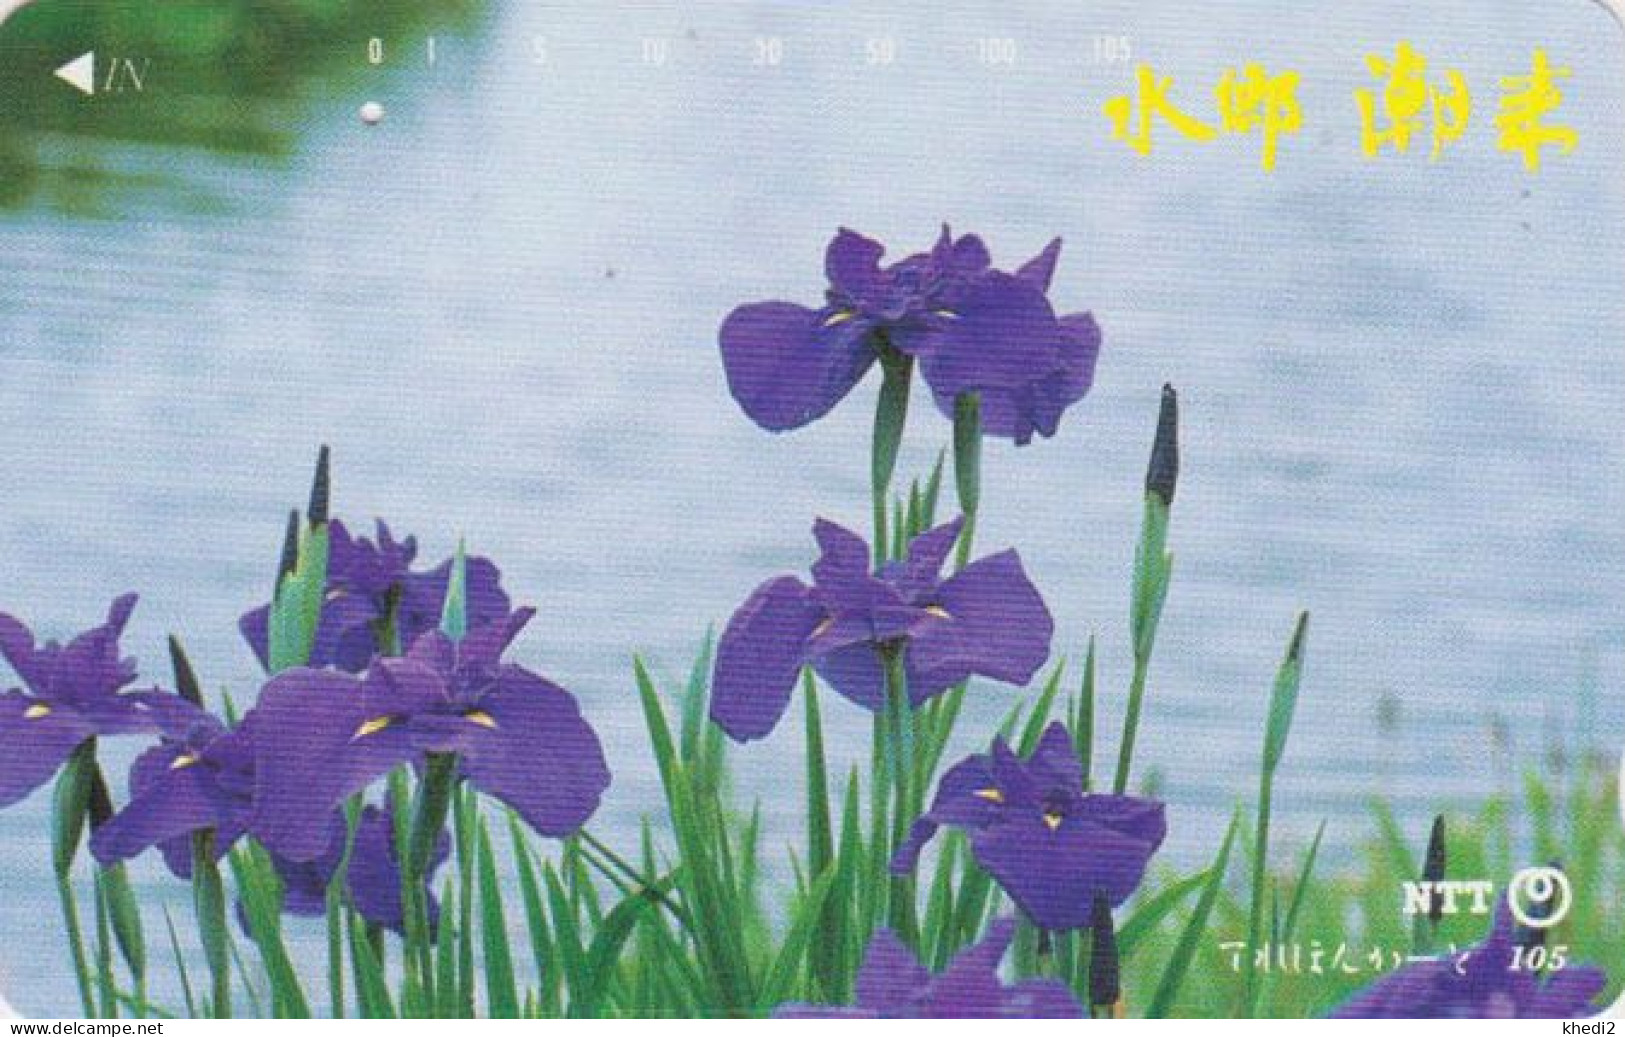 Télécarte JAPON / NTT 251-003 B ** 1 PUNCH ** - FLEUR IRIS D'EAU - FLOWER JAPAN Phonecard - Fiori